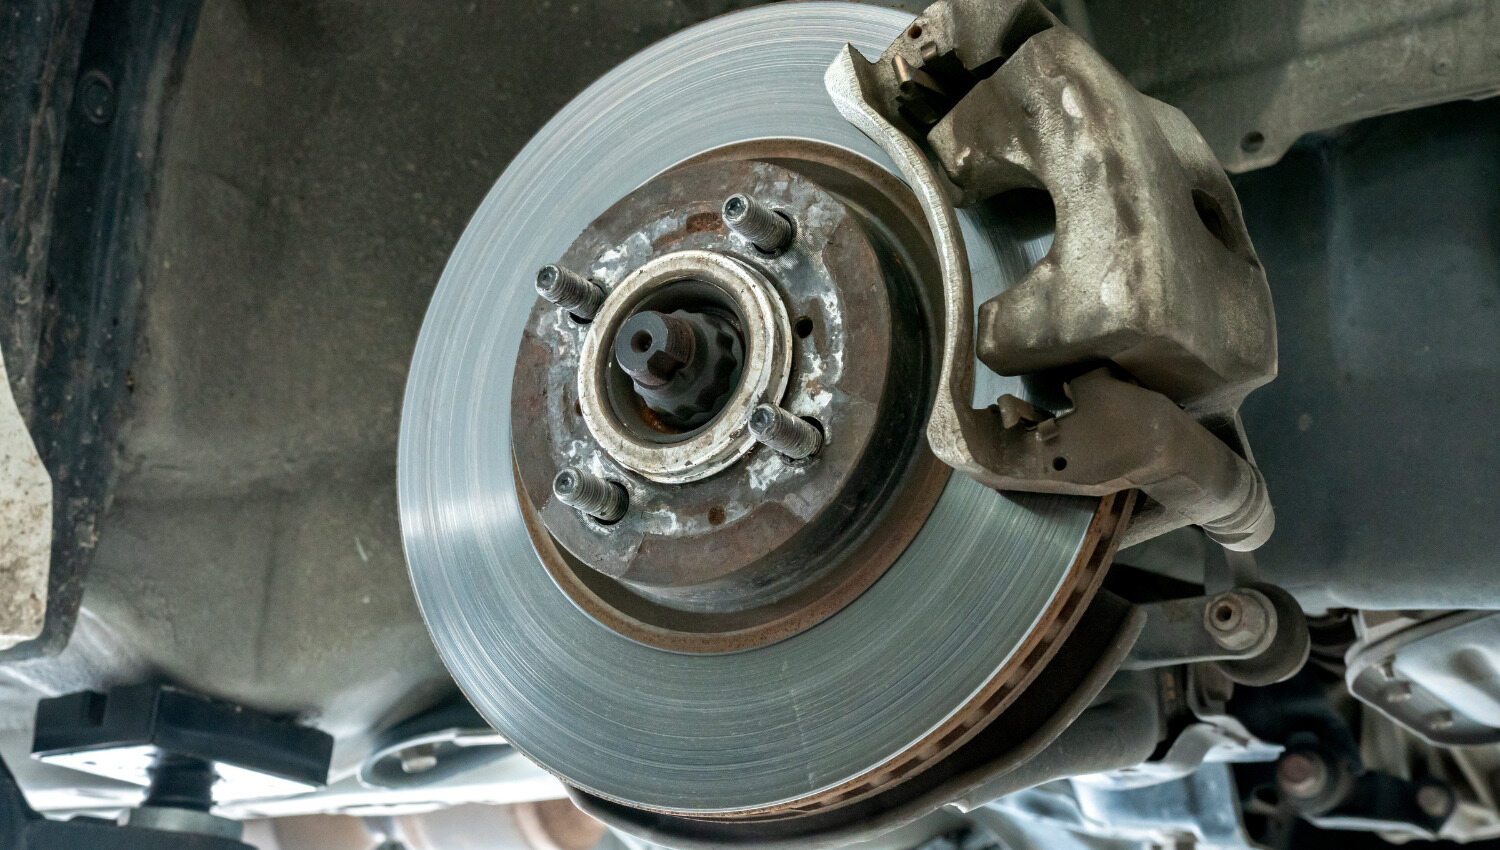 Comment savoir si ses disques de freins sont usés ? Blog mécanique